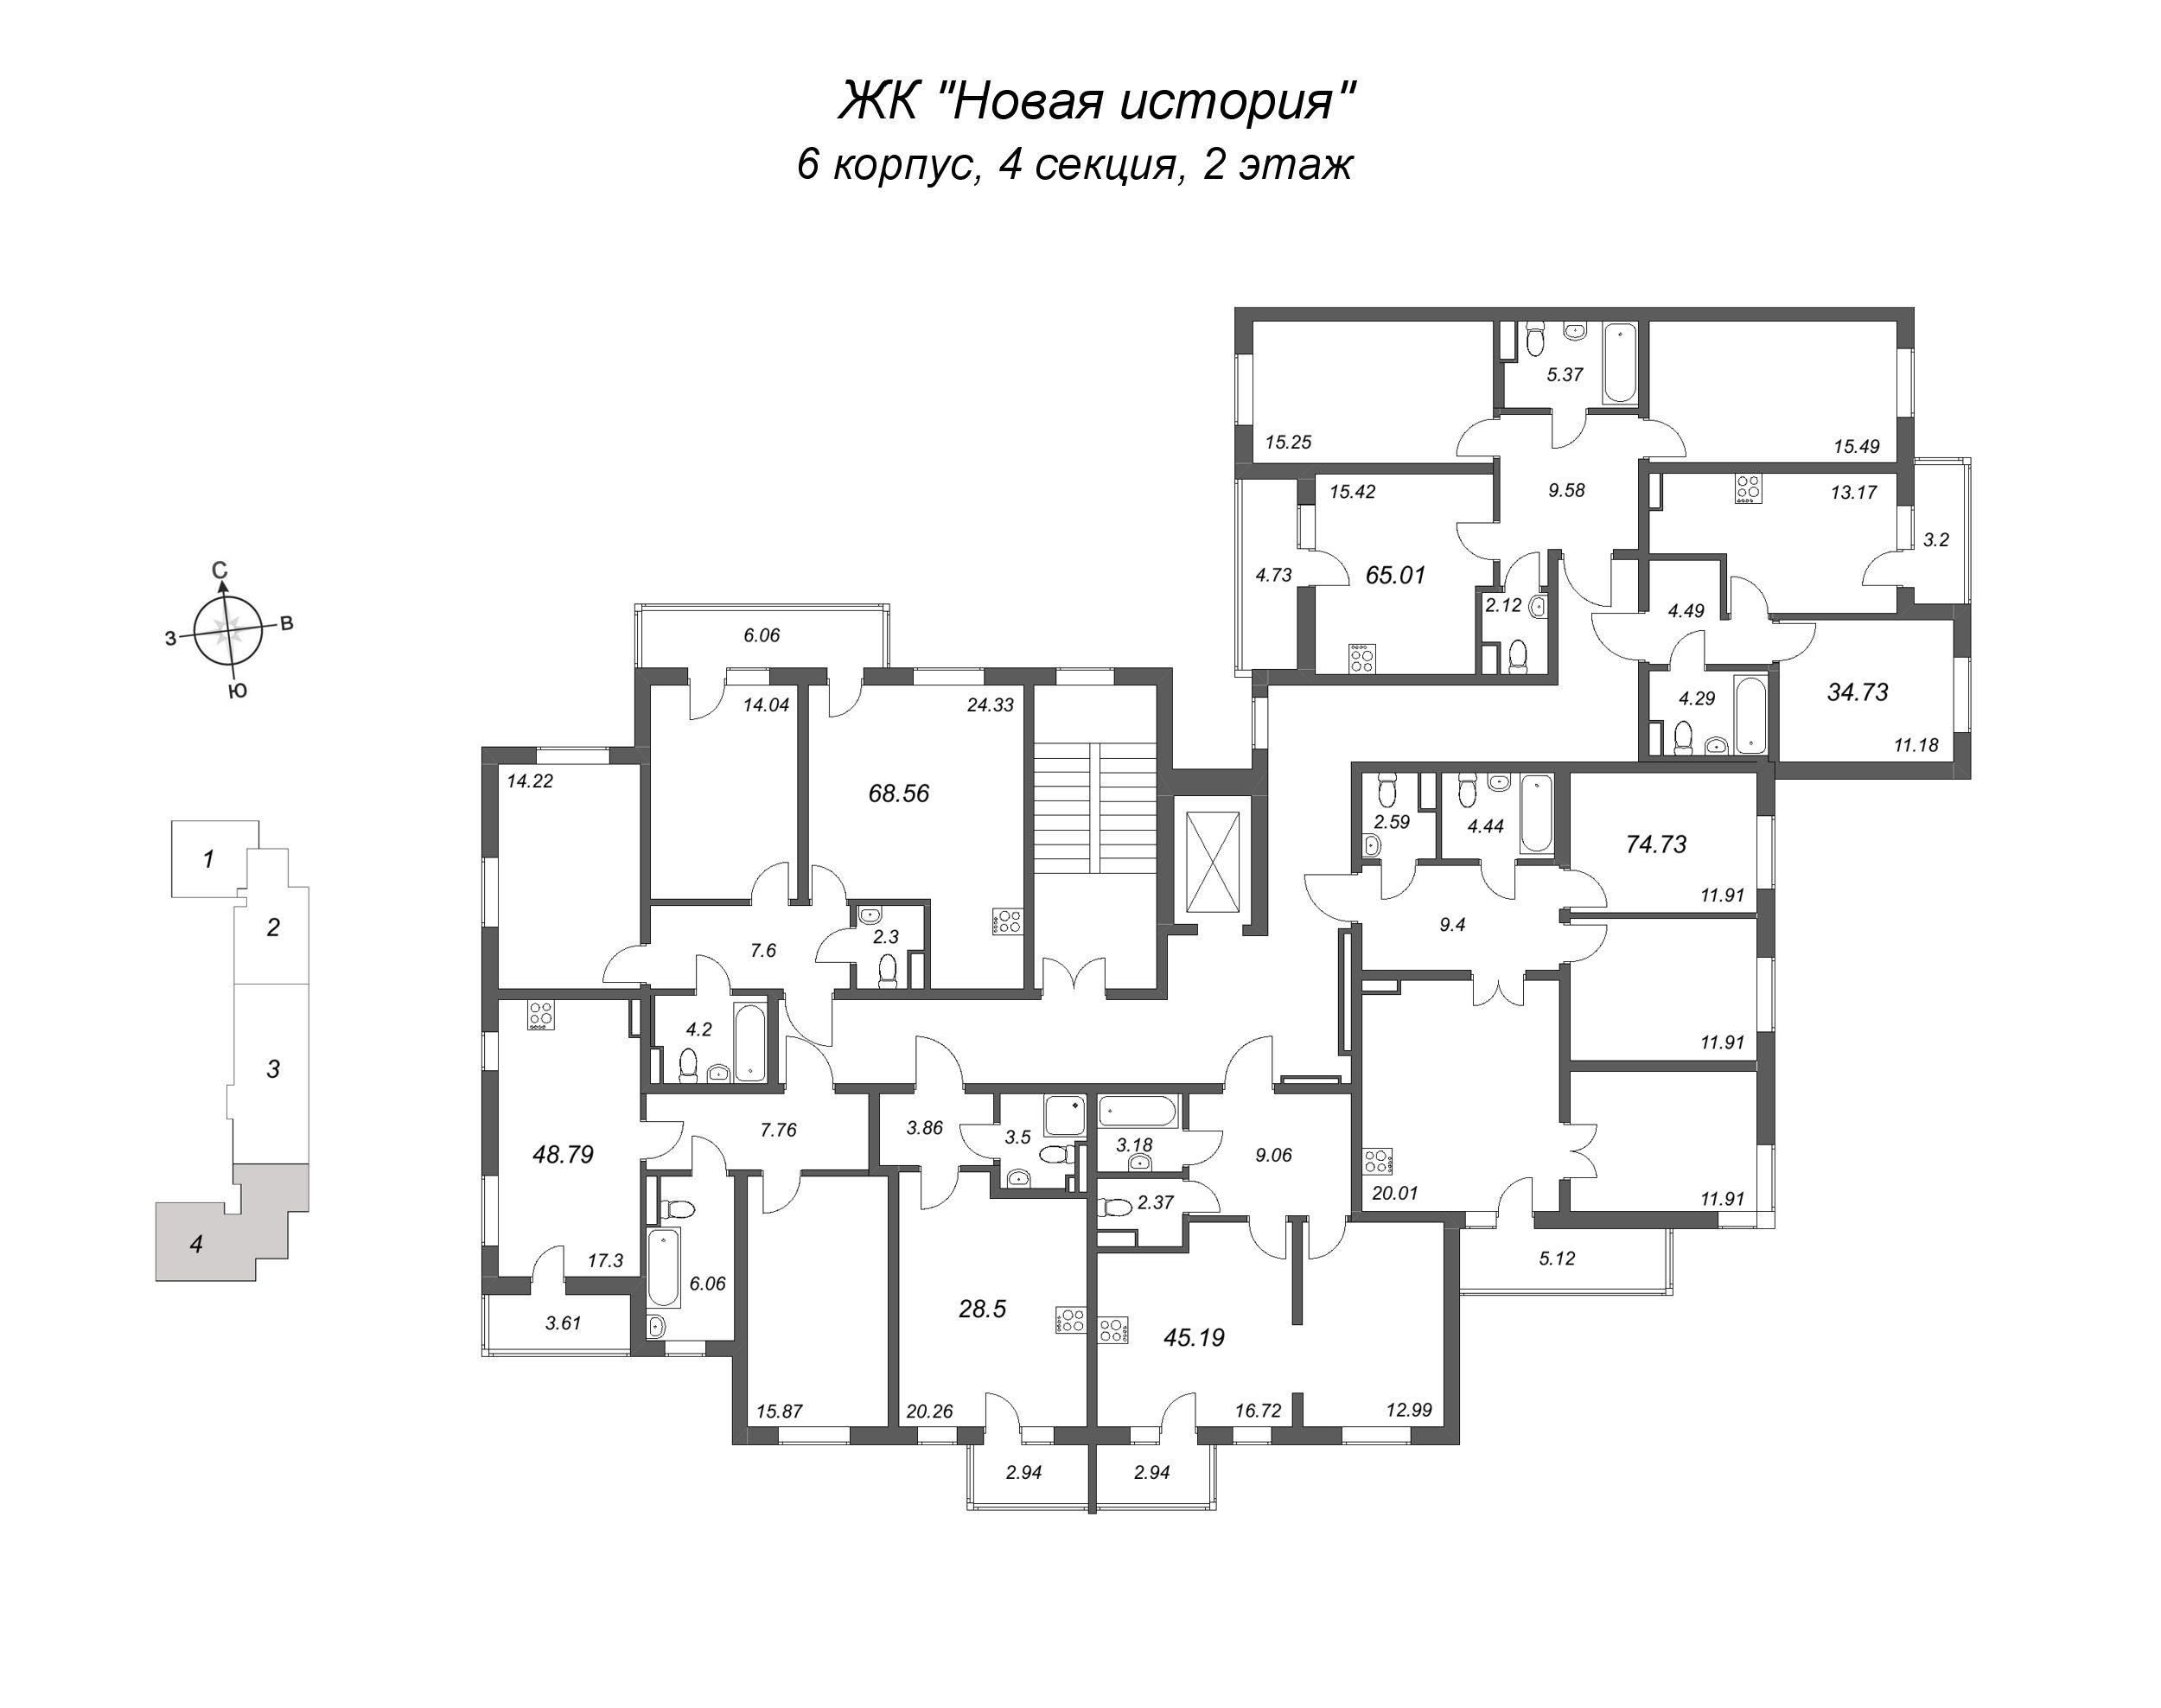 3-комнатная (Евро) квартира, 68.56 м² в ЖК "Новая история" - планировка этажа